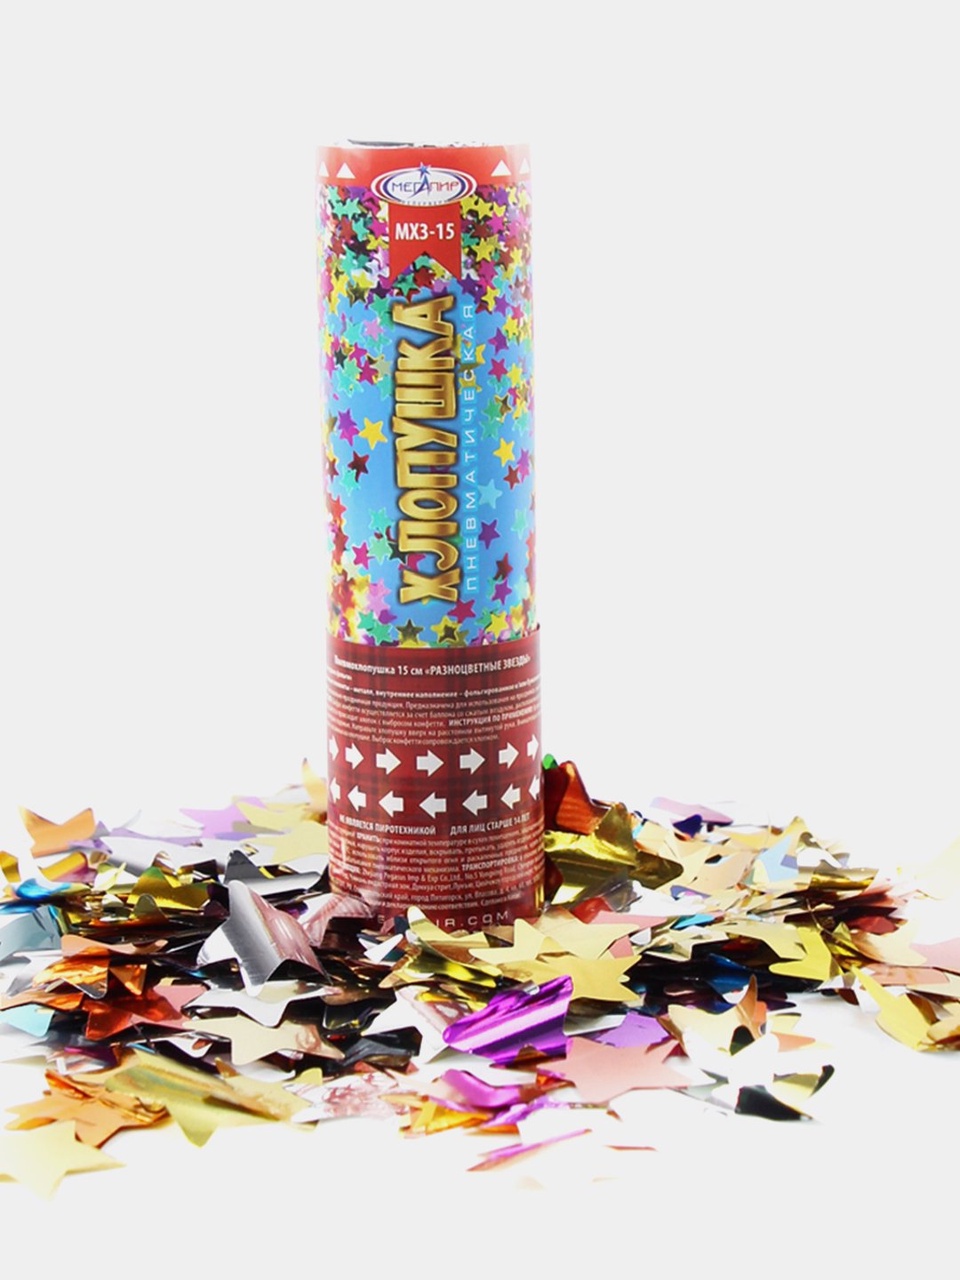 Пневматическая хлопушка 15 см конфетти разноцветные звезды из фольги МХ3-15 - 170 ₽, заказать онлайн.